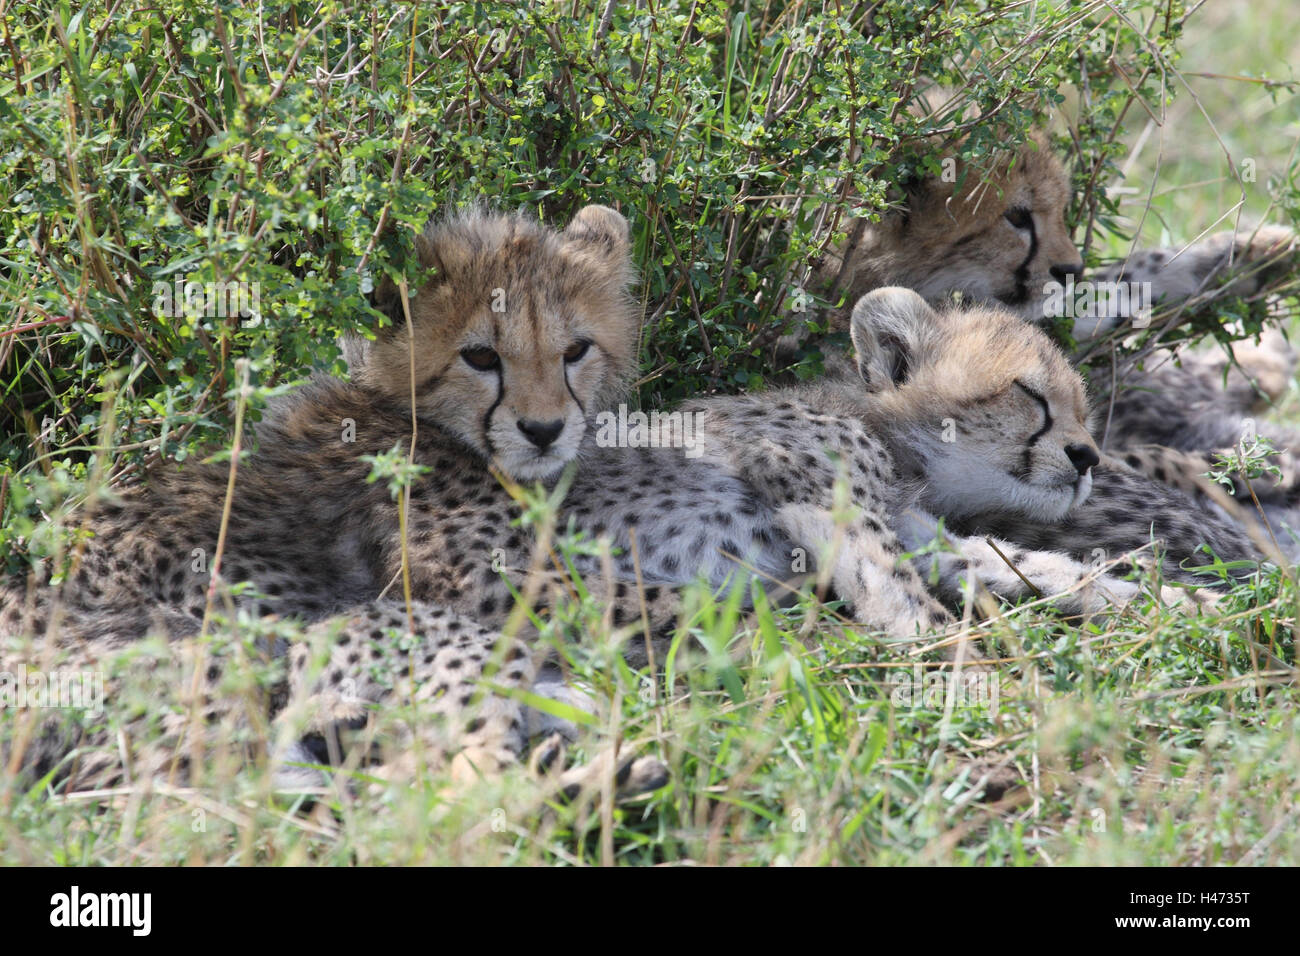 A los guepardos, los animales jóvenes se encuentran en la sombra, Foto de stock